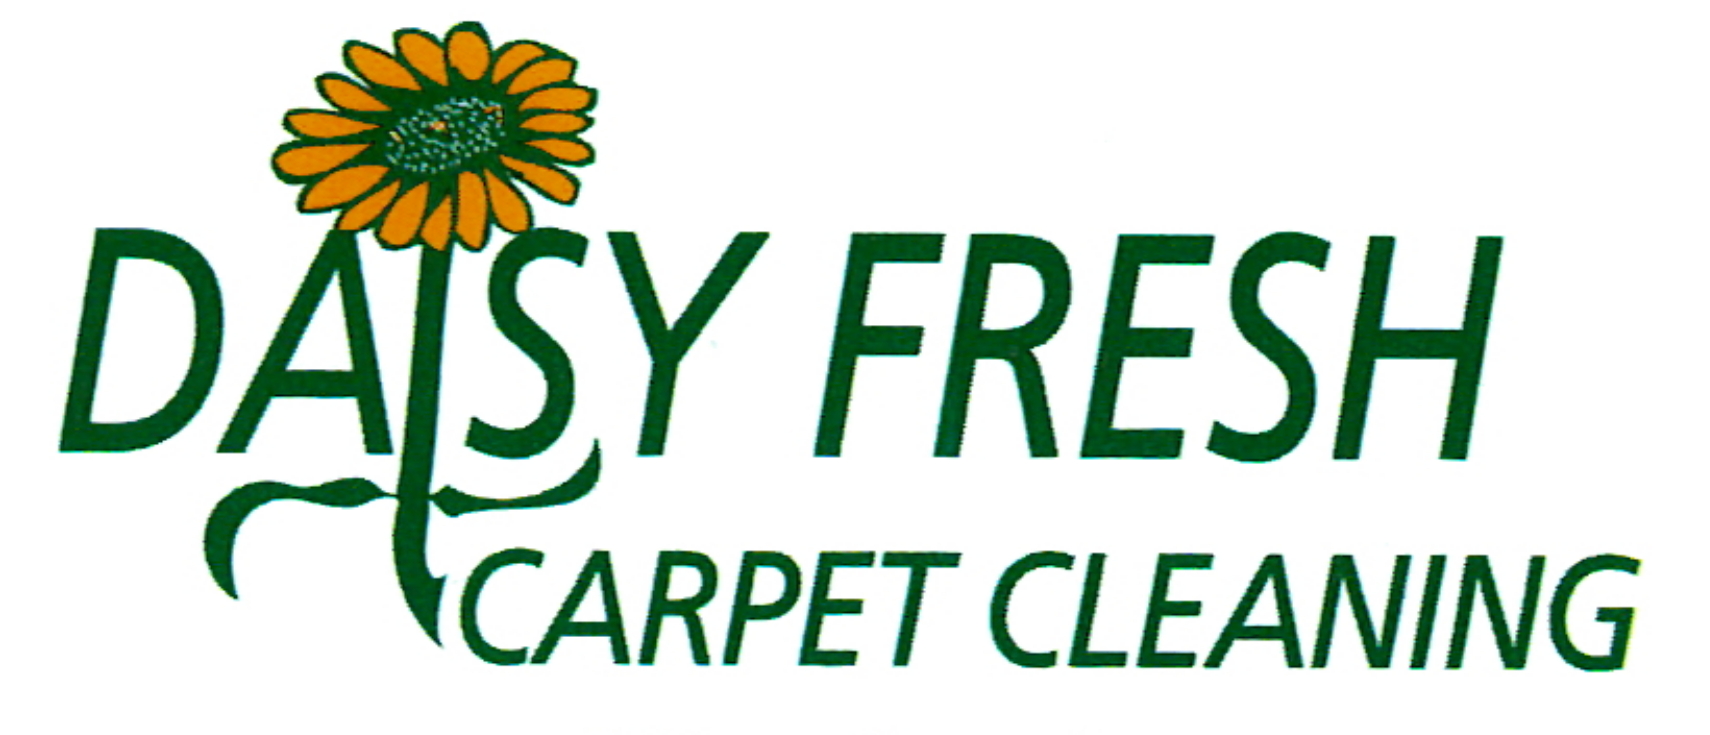 8 Best Carpet Cleaning Services Ashburn VA HomeAdvisor